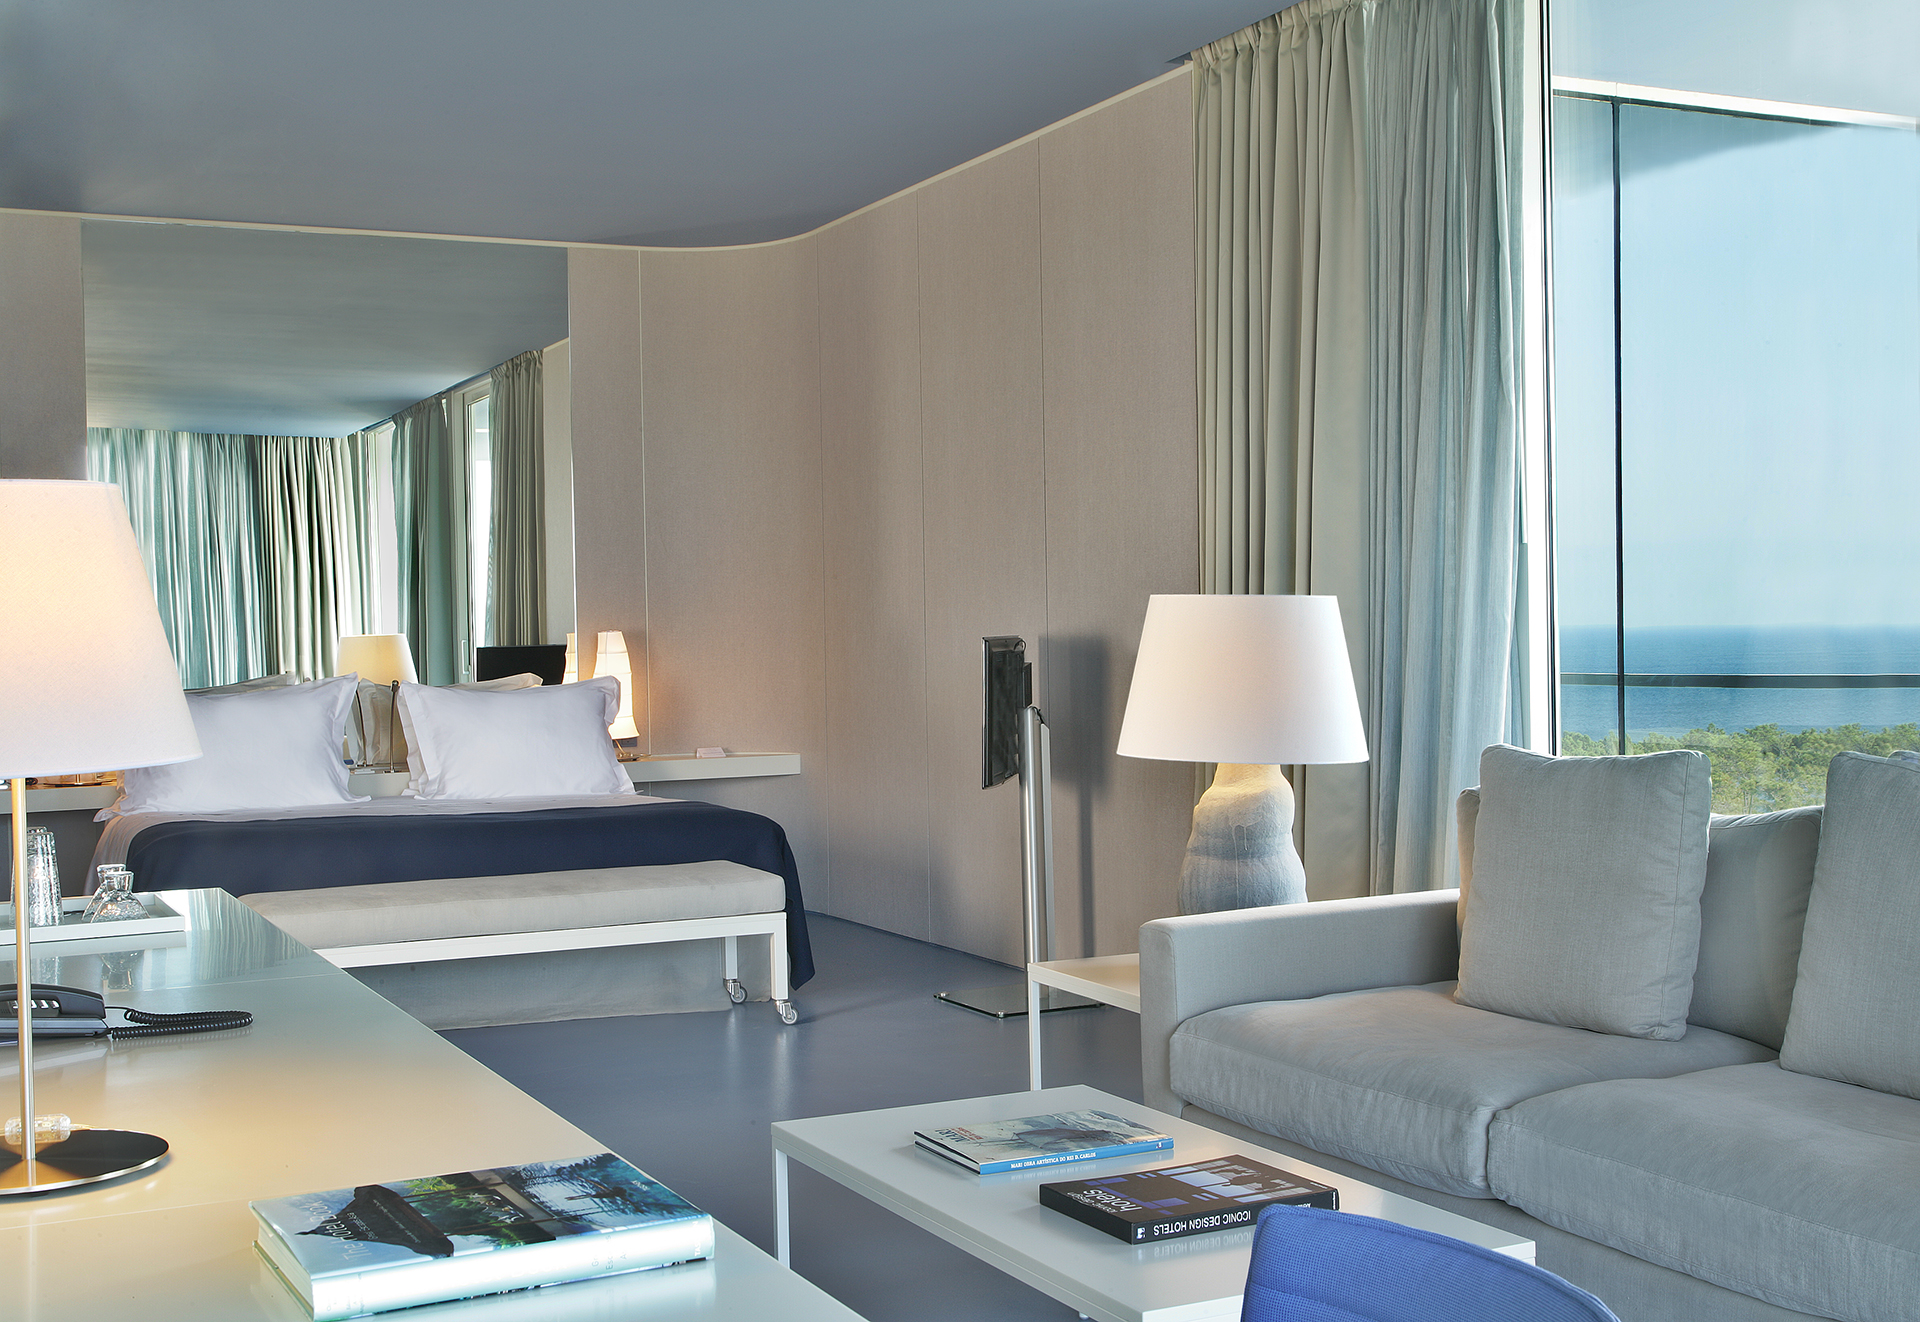 Golf-expedition-golfreizen-golfresort-Royal-The-Oitavos-Hotel-appartement-corner-livingroom